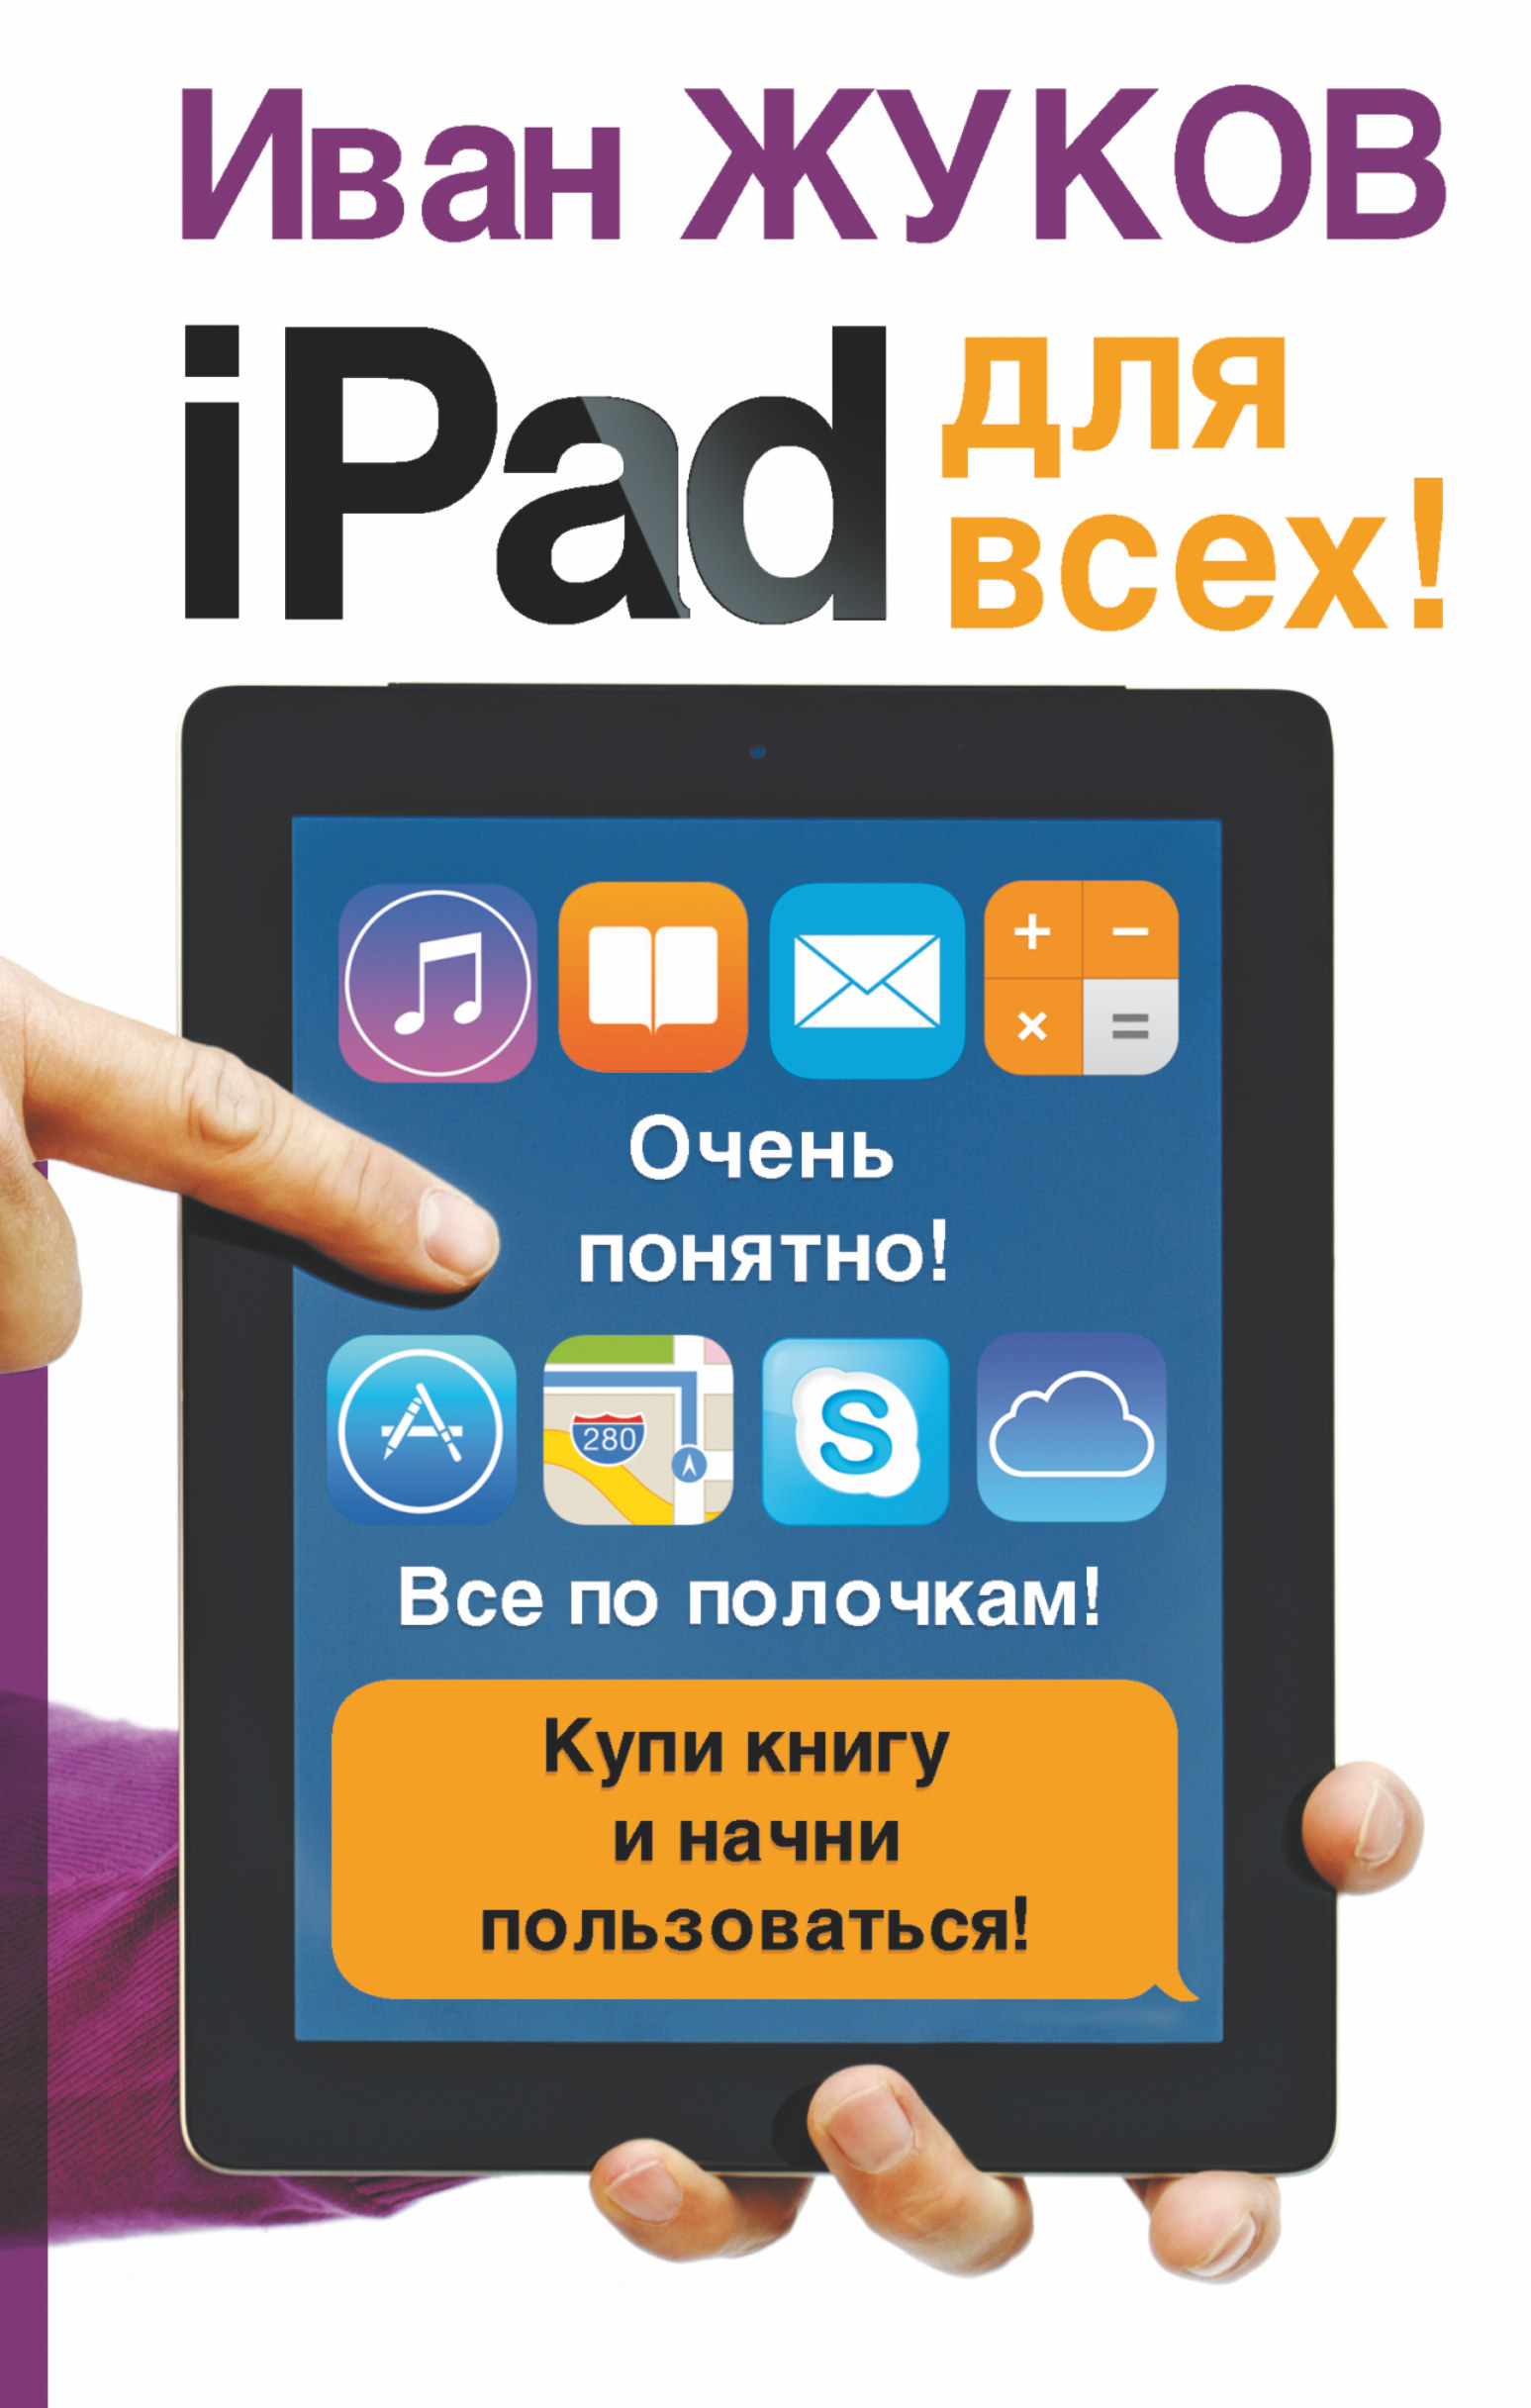 iPad  !